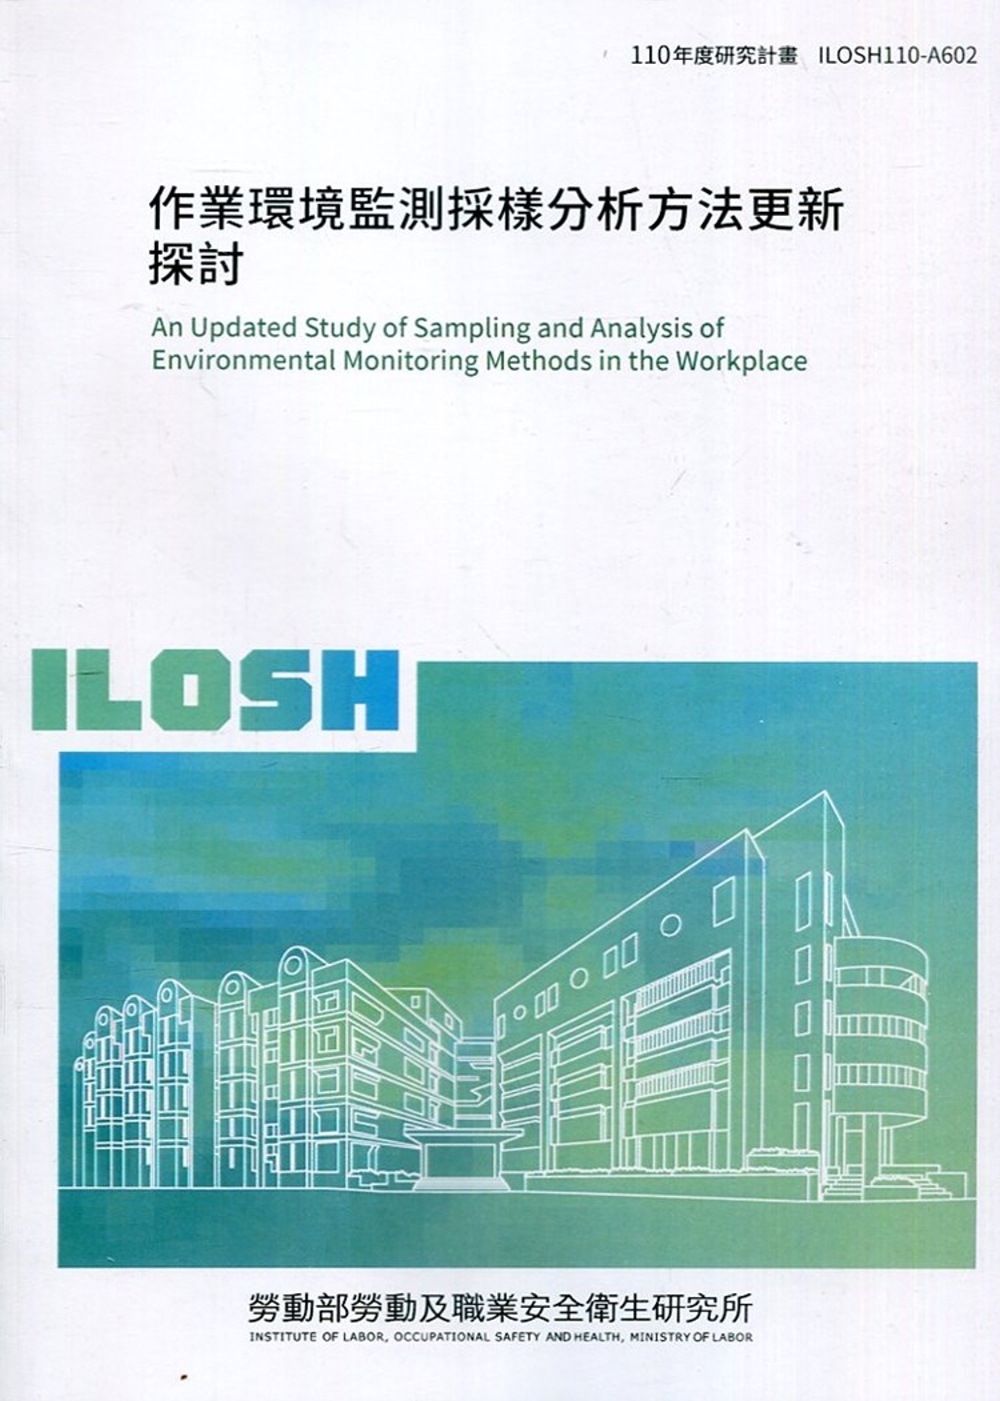 作業環境監測採樣分析方法更新探討 ILOSH110-A602